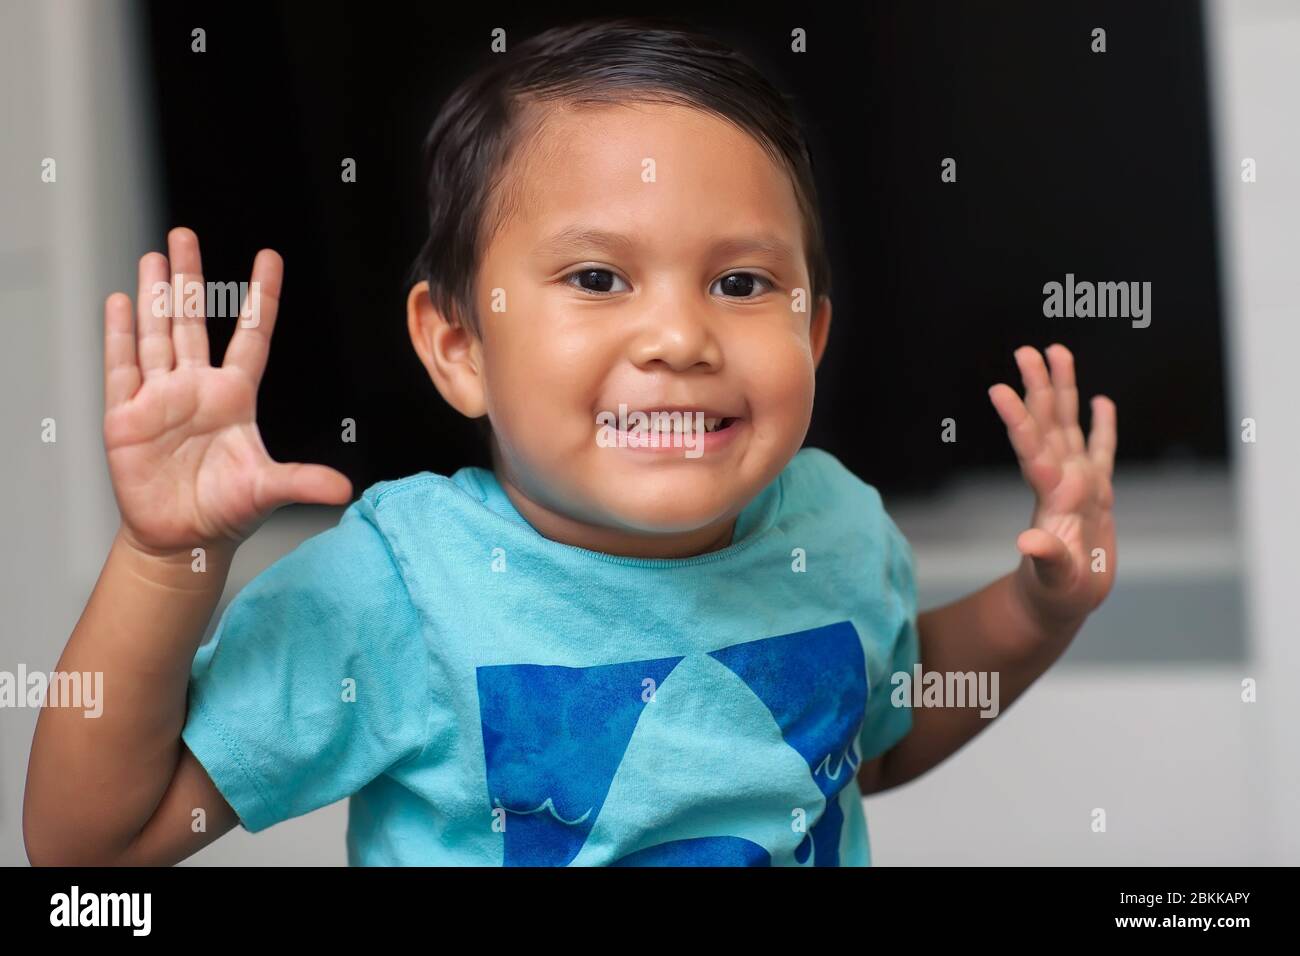 Niño que está usando sus manos y dedos mientras aprende a contar, edad de un niño preescolar y levantar ambas manos mientras sonríe. Foto de stock